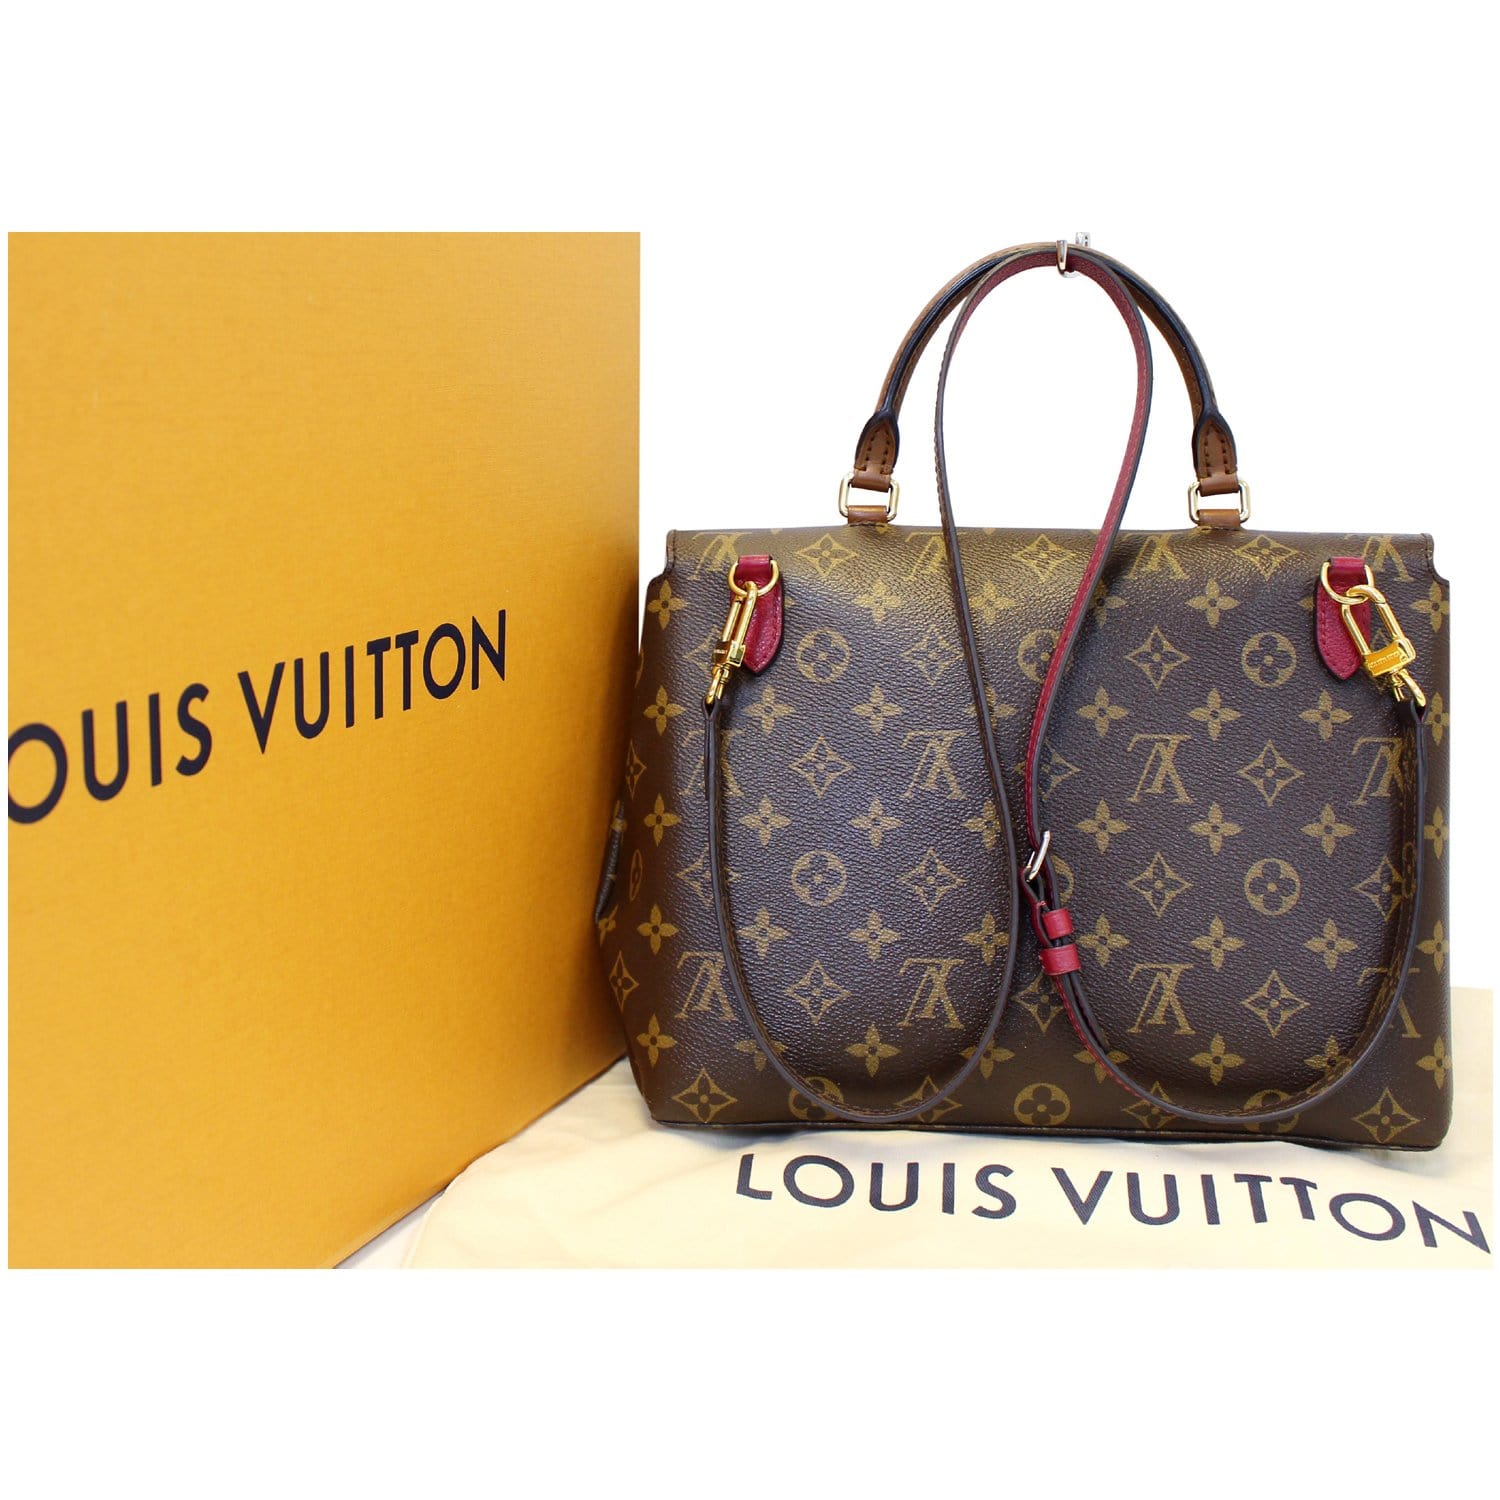 L' Immensité de Louis Vuitton 🔥🔥🔥🔥. Recomendada! #recommended